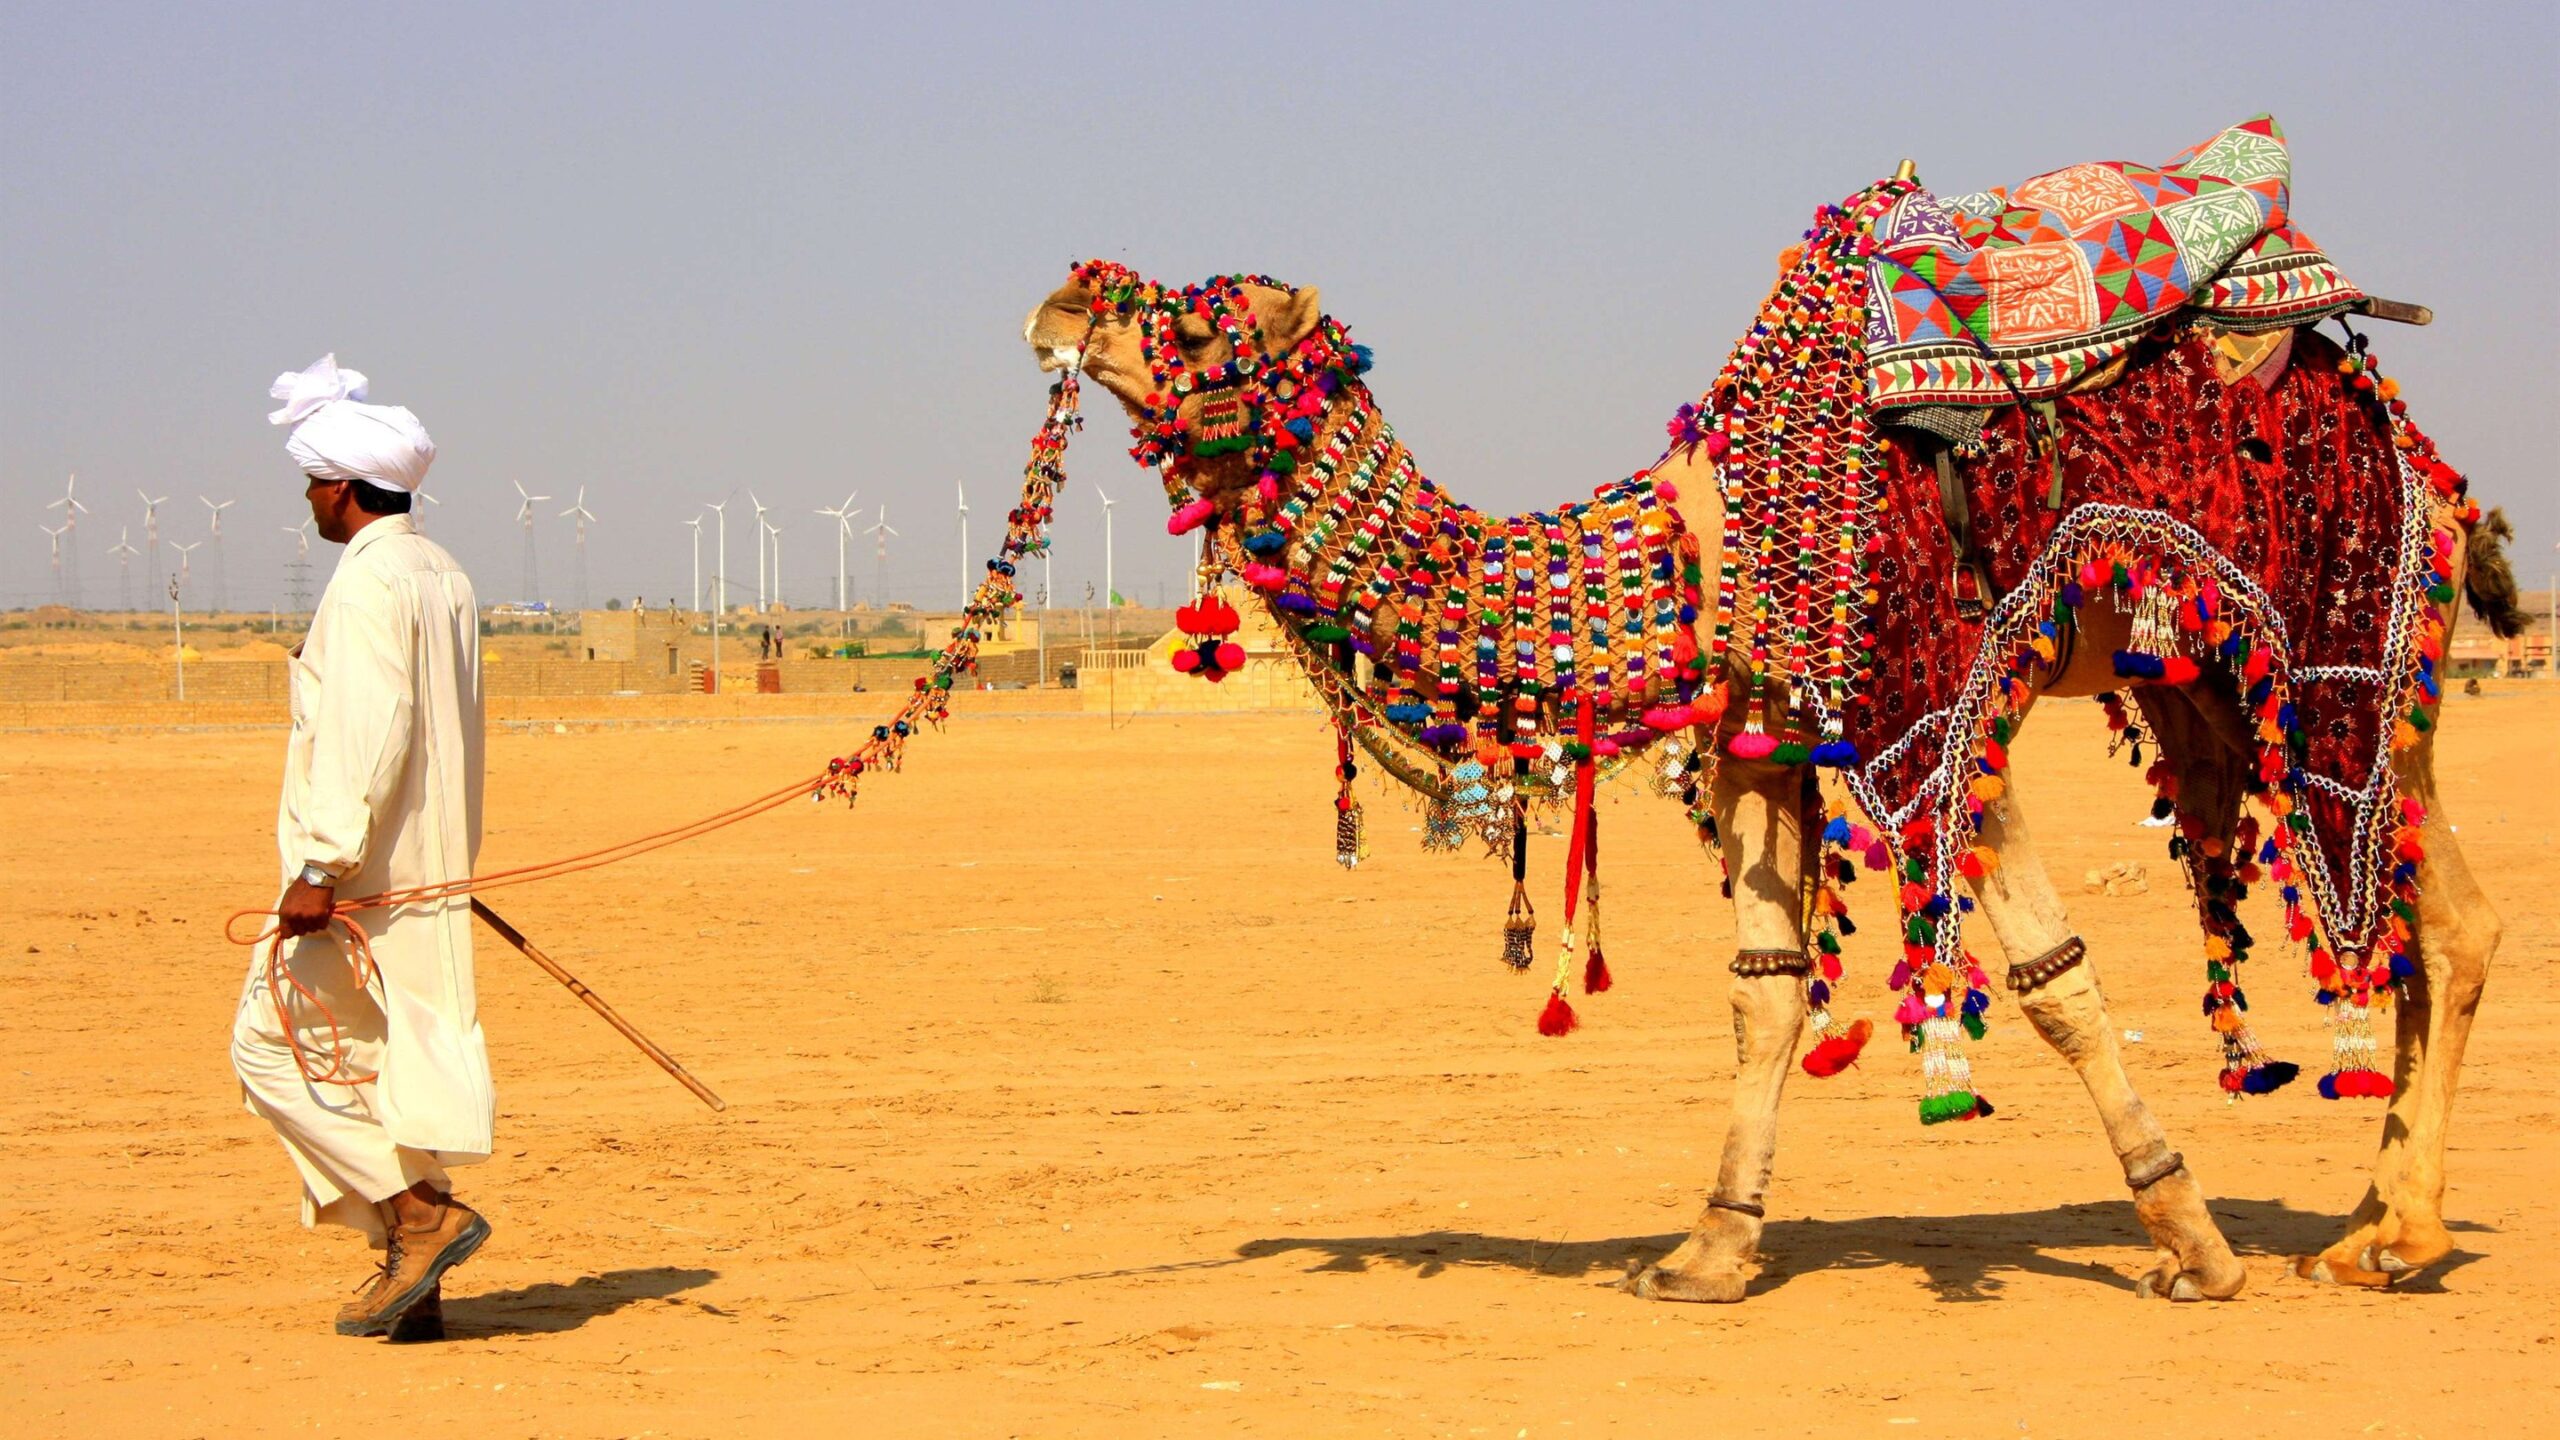 Camel Decorated in Jaisalmer Desert Safari